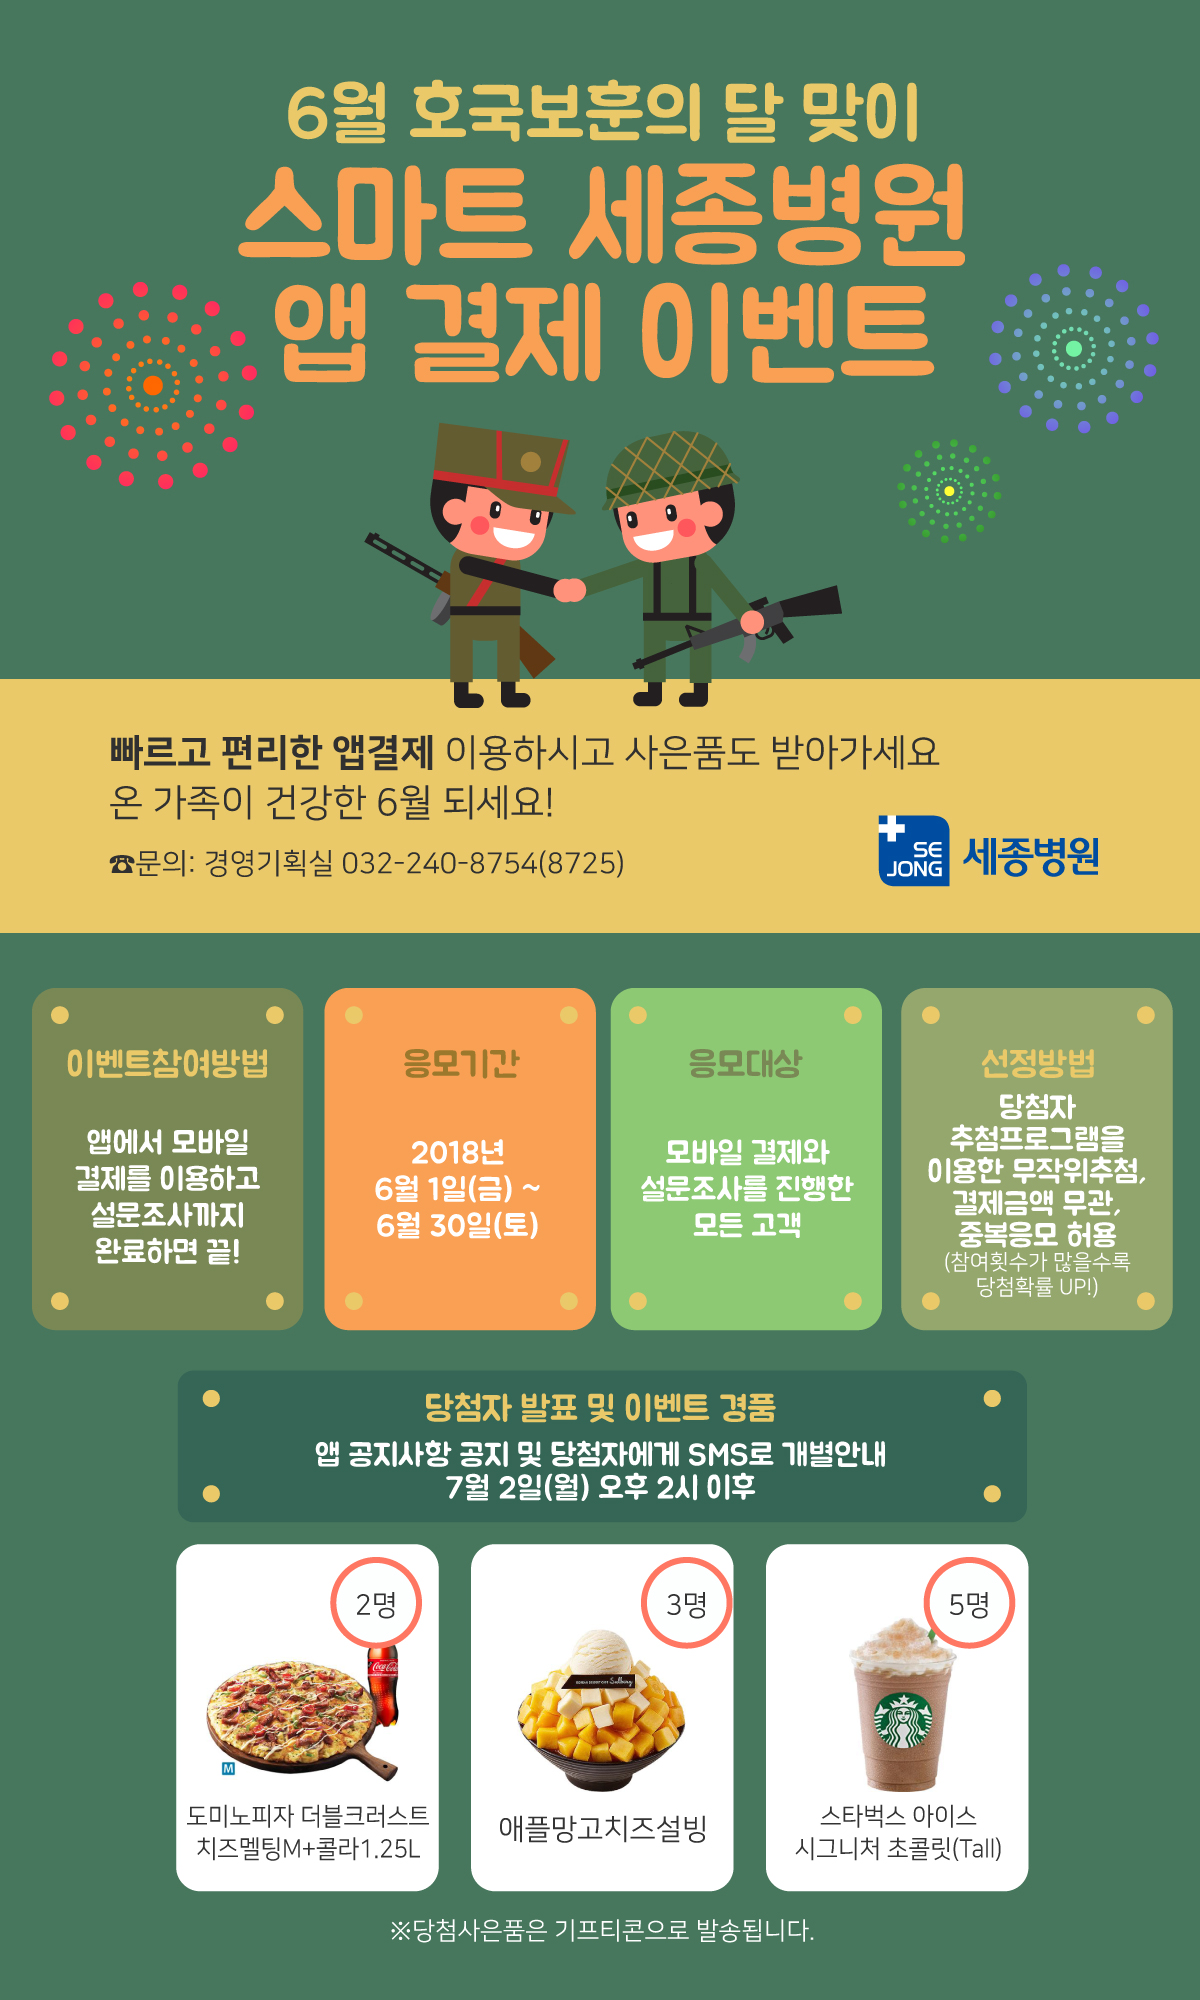 2018_0612_경영기획과_모바일앱이벤트6월_본원.jpg